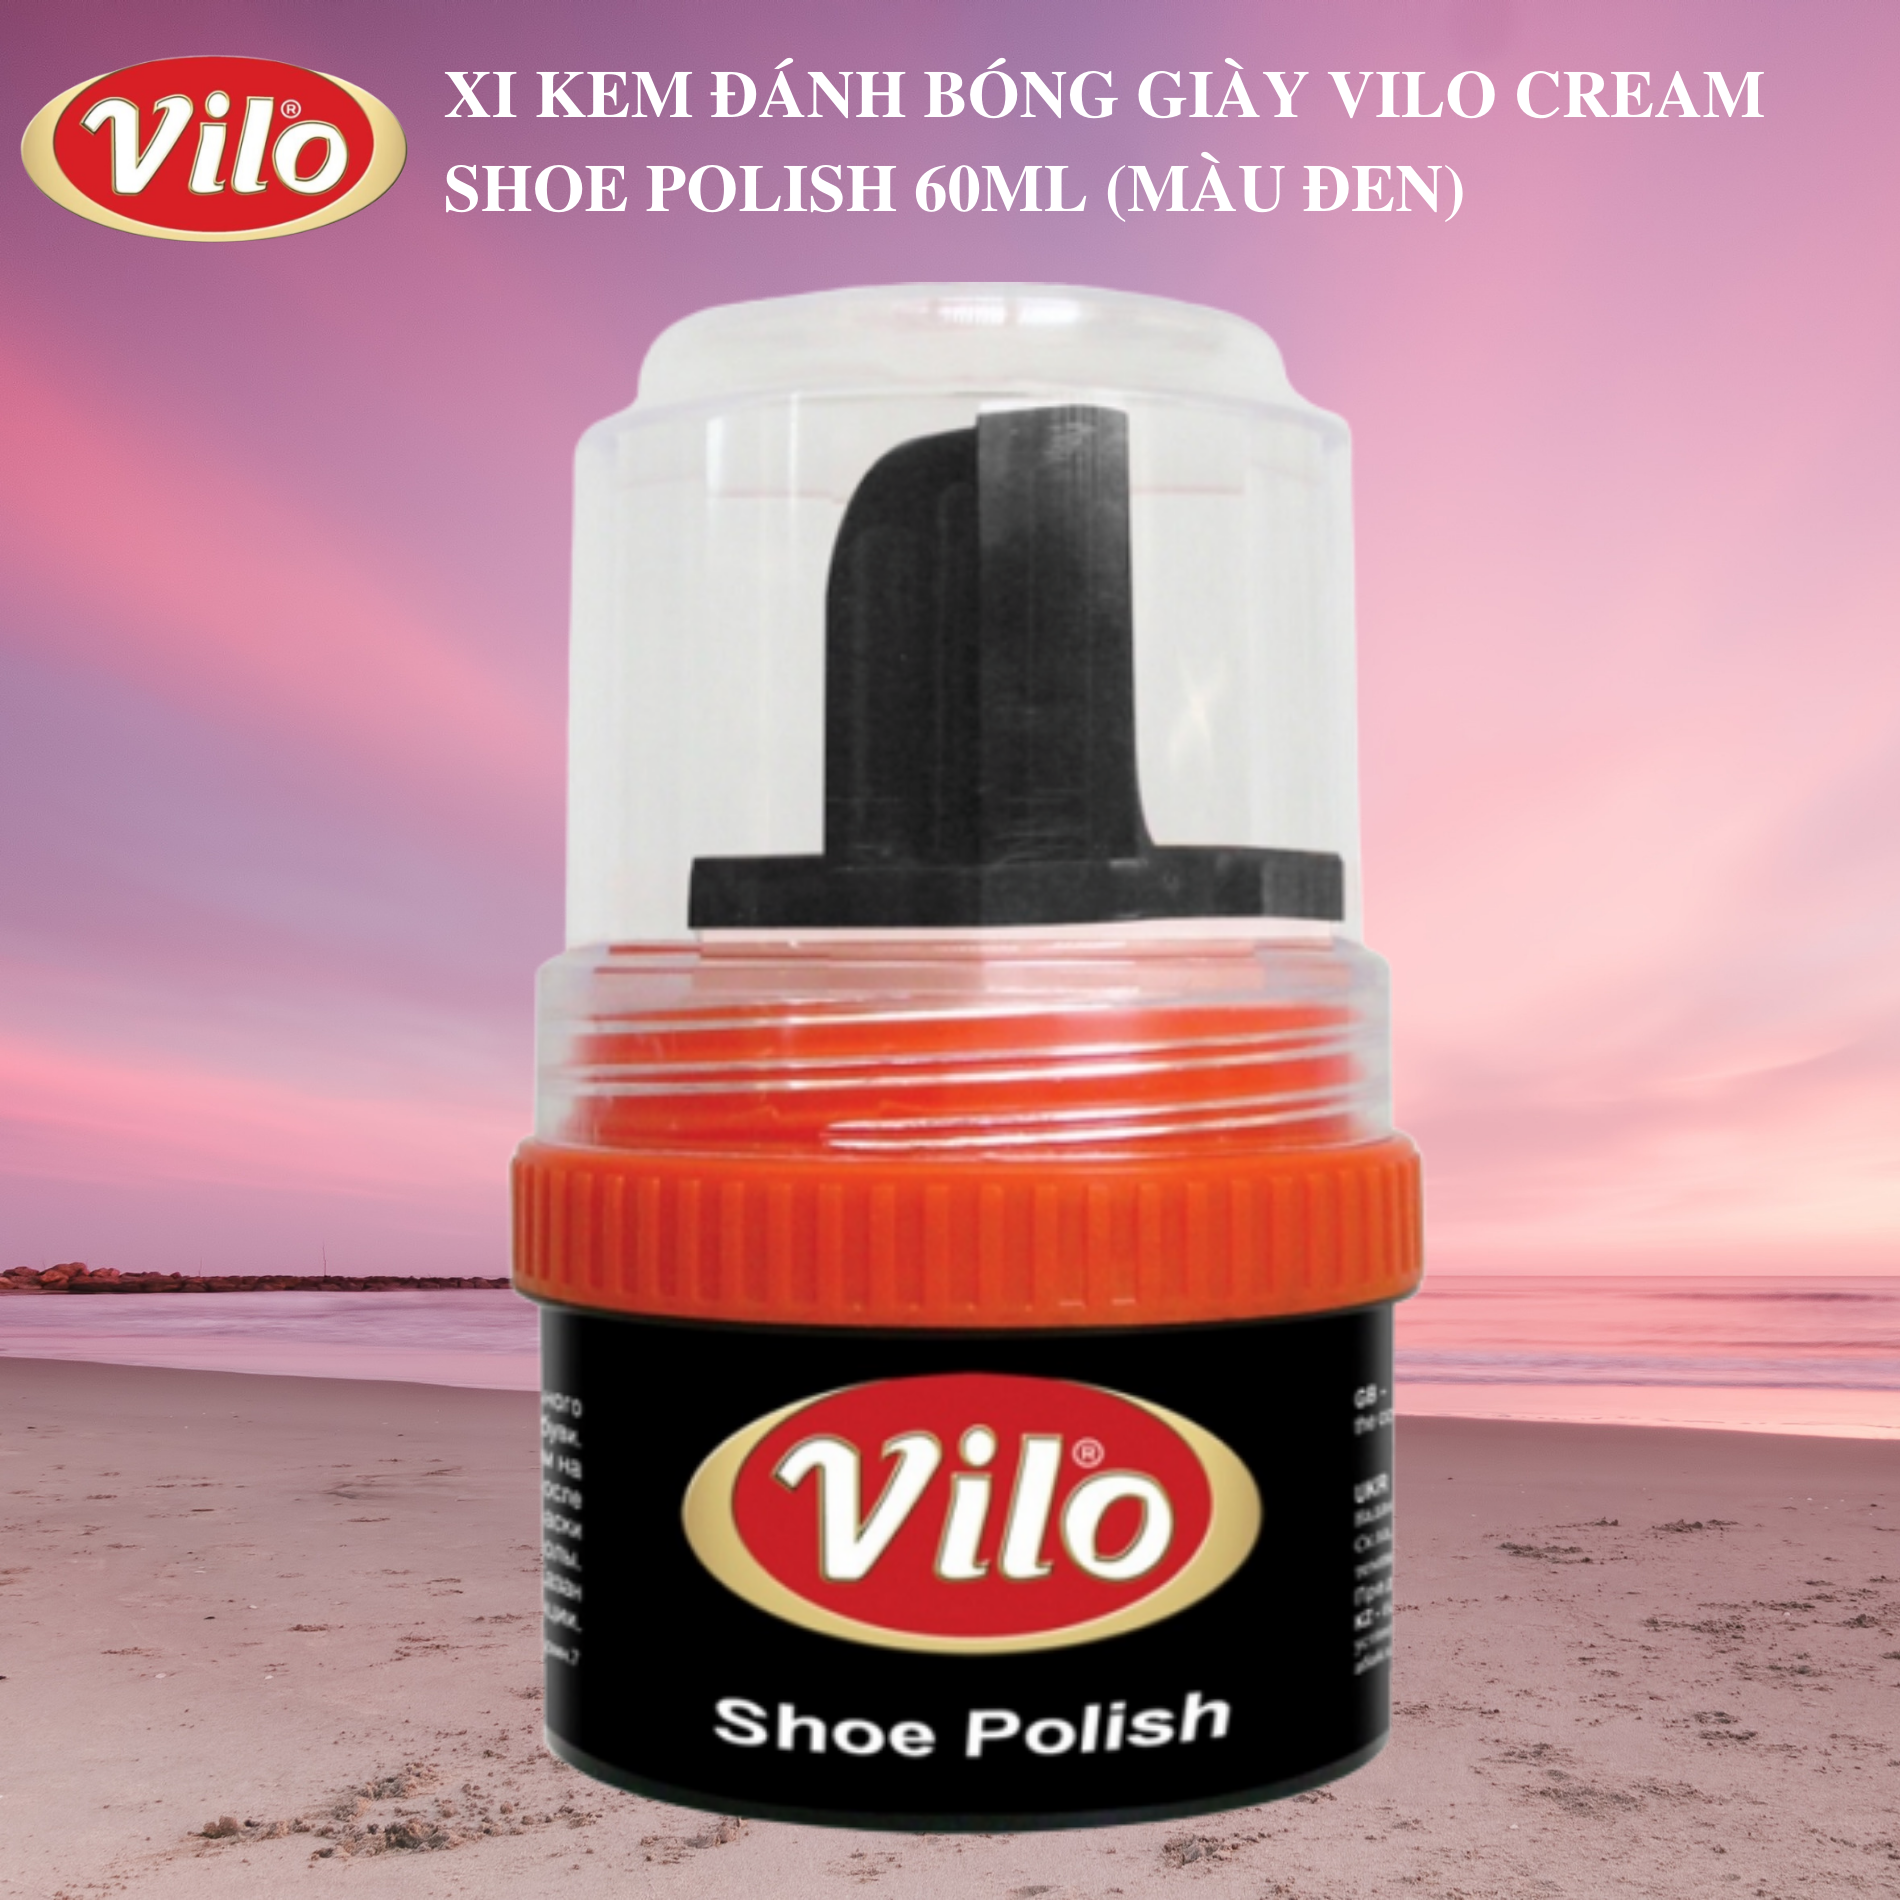 Xi kem đánh bóng giày Vilo cream shoe polish 60ml (màu đen)